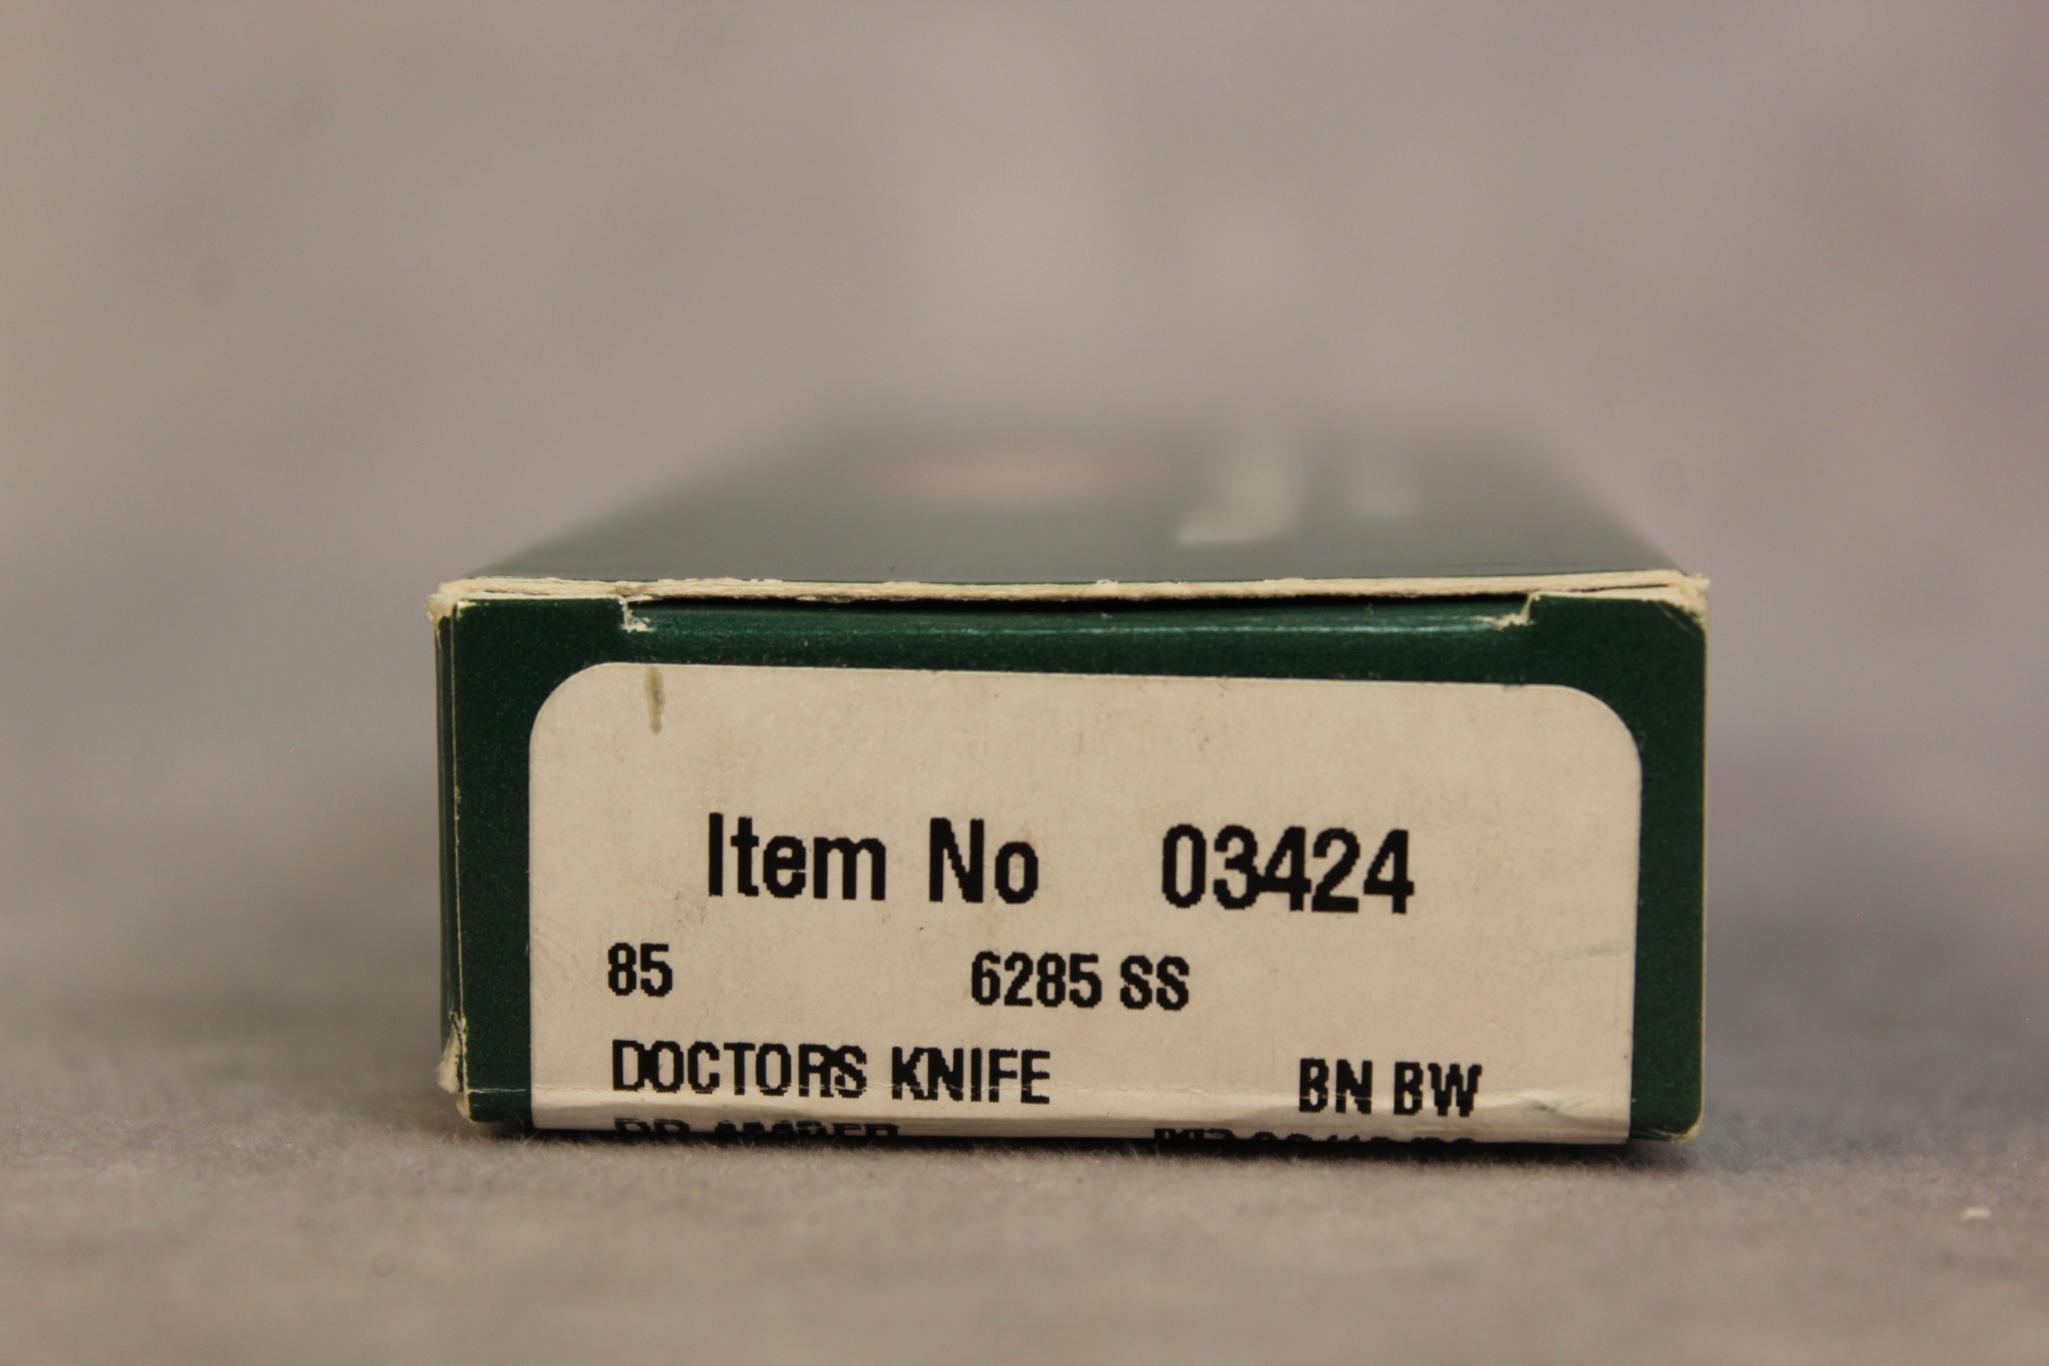 2002 DRK AMBER BONE DR. KNIFE. 6285 SS